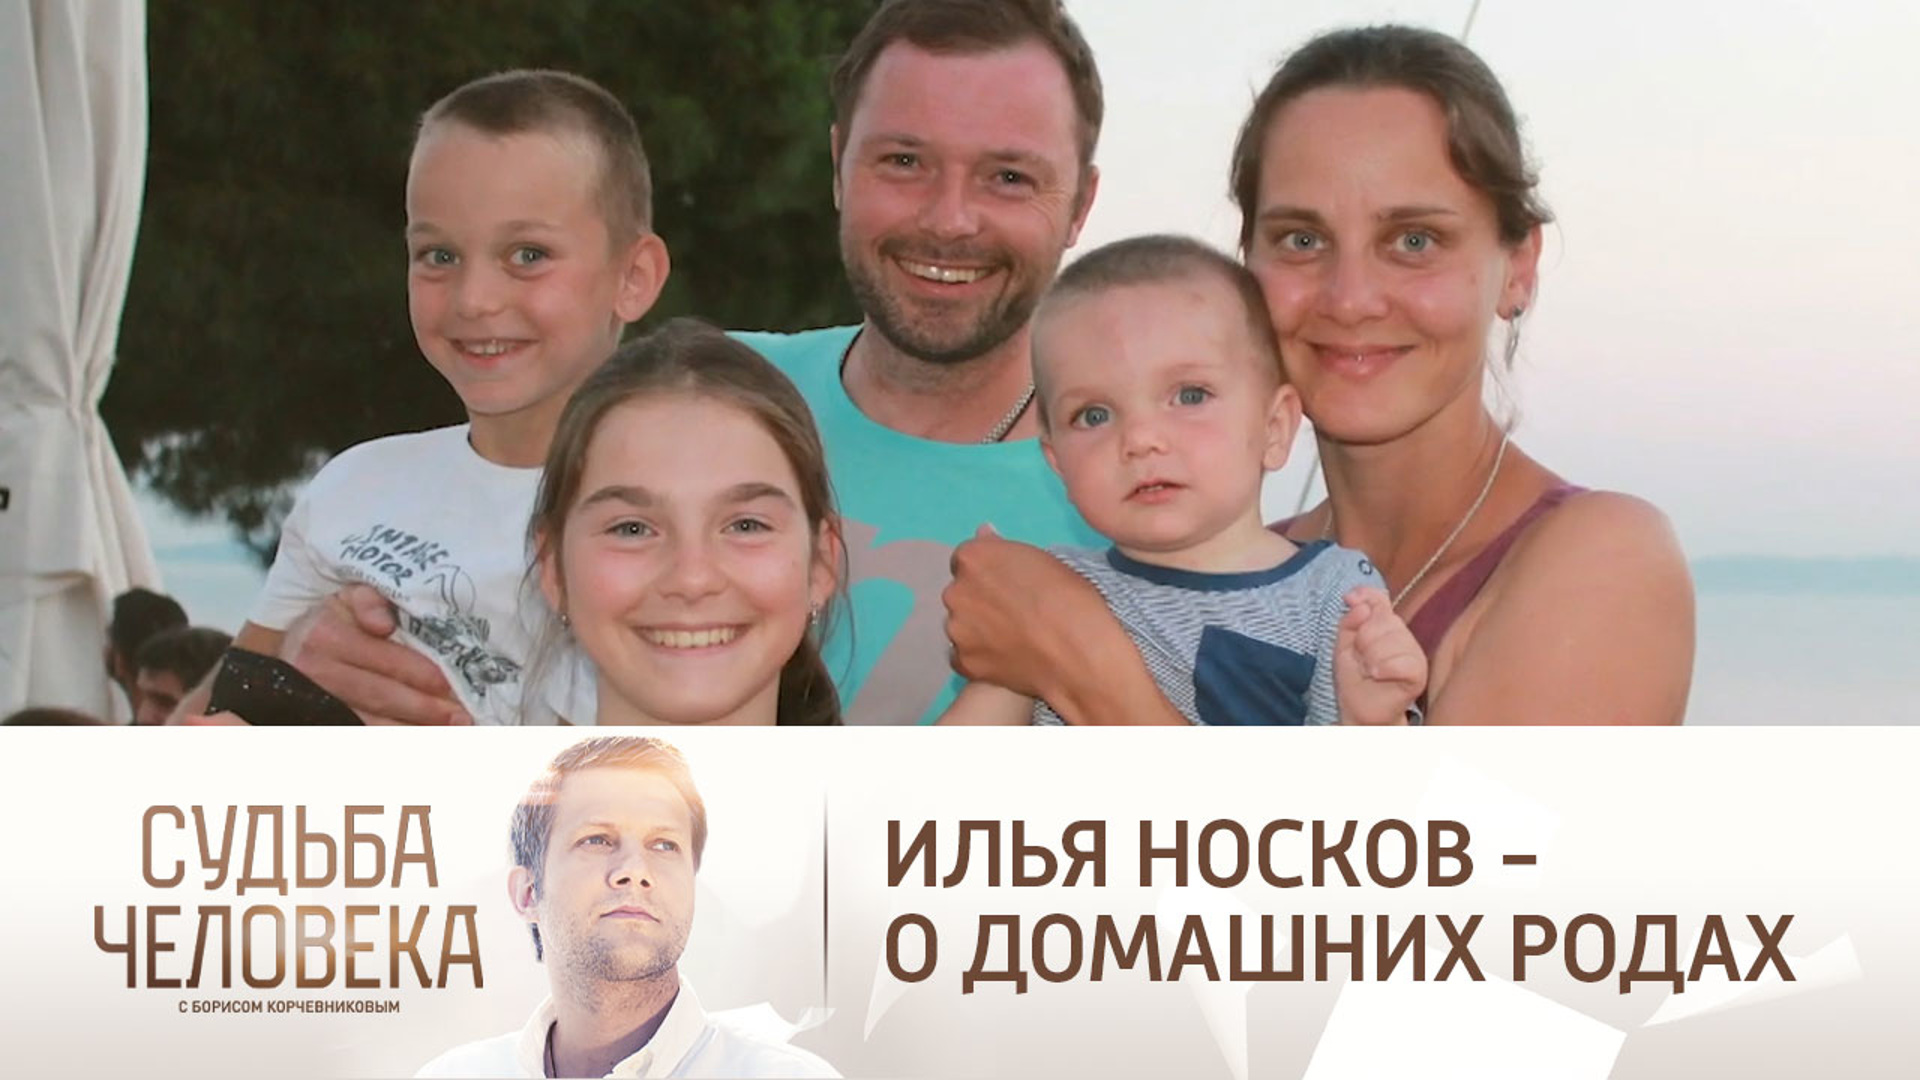 Илья носков семья